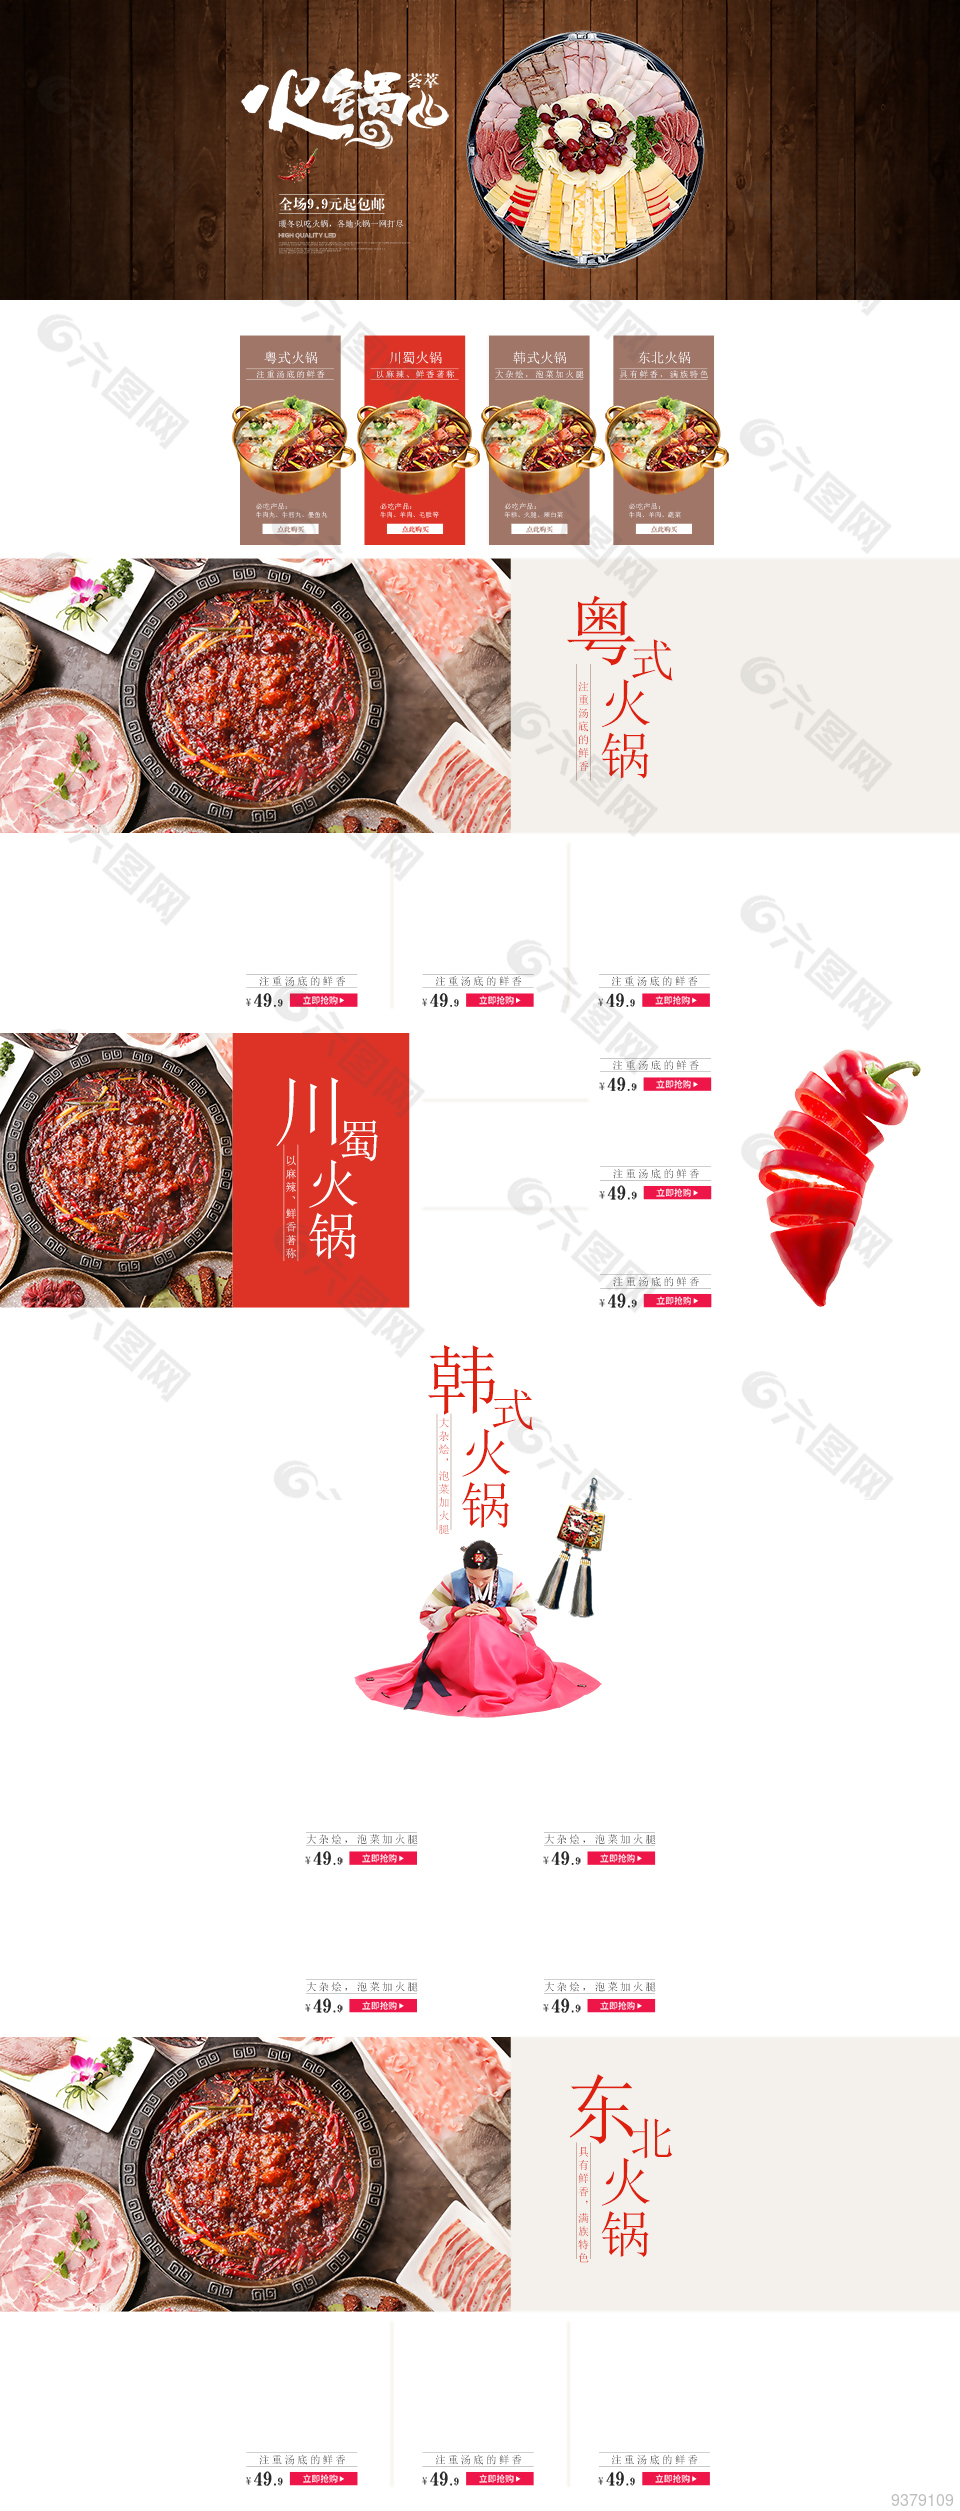 美食网站界面设计